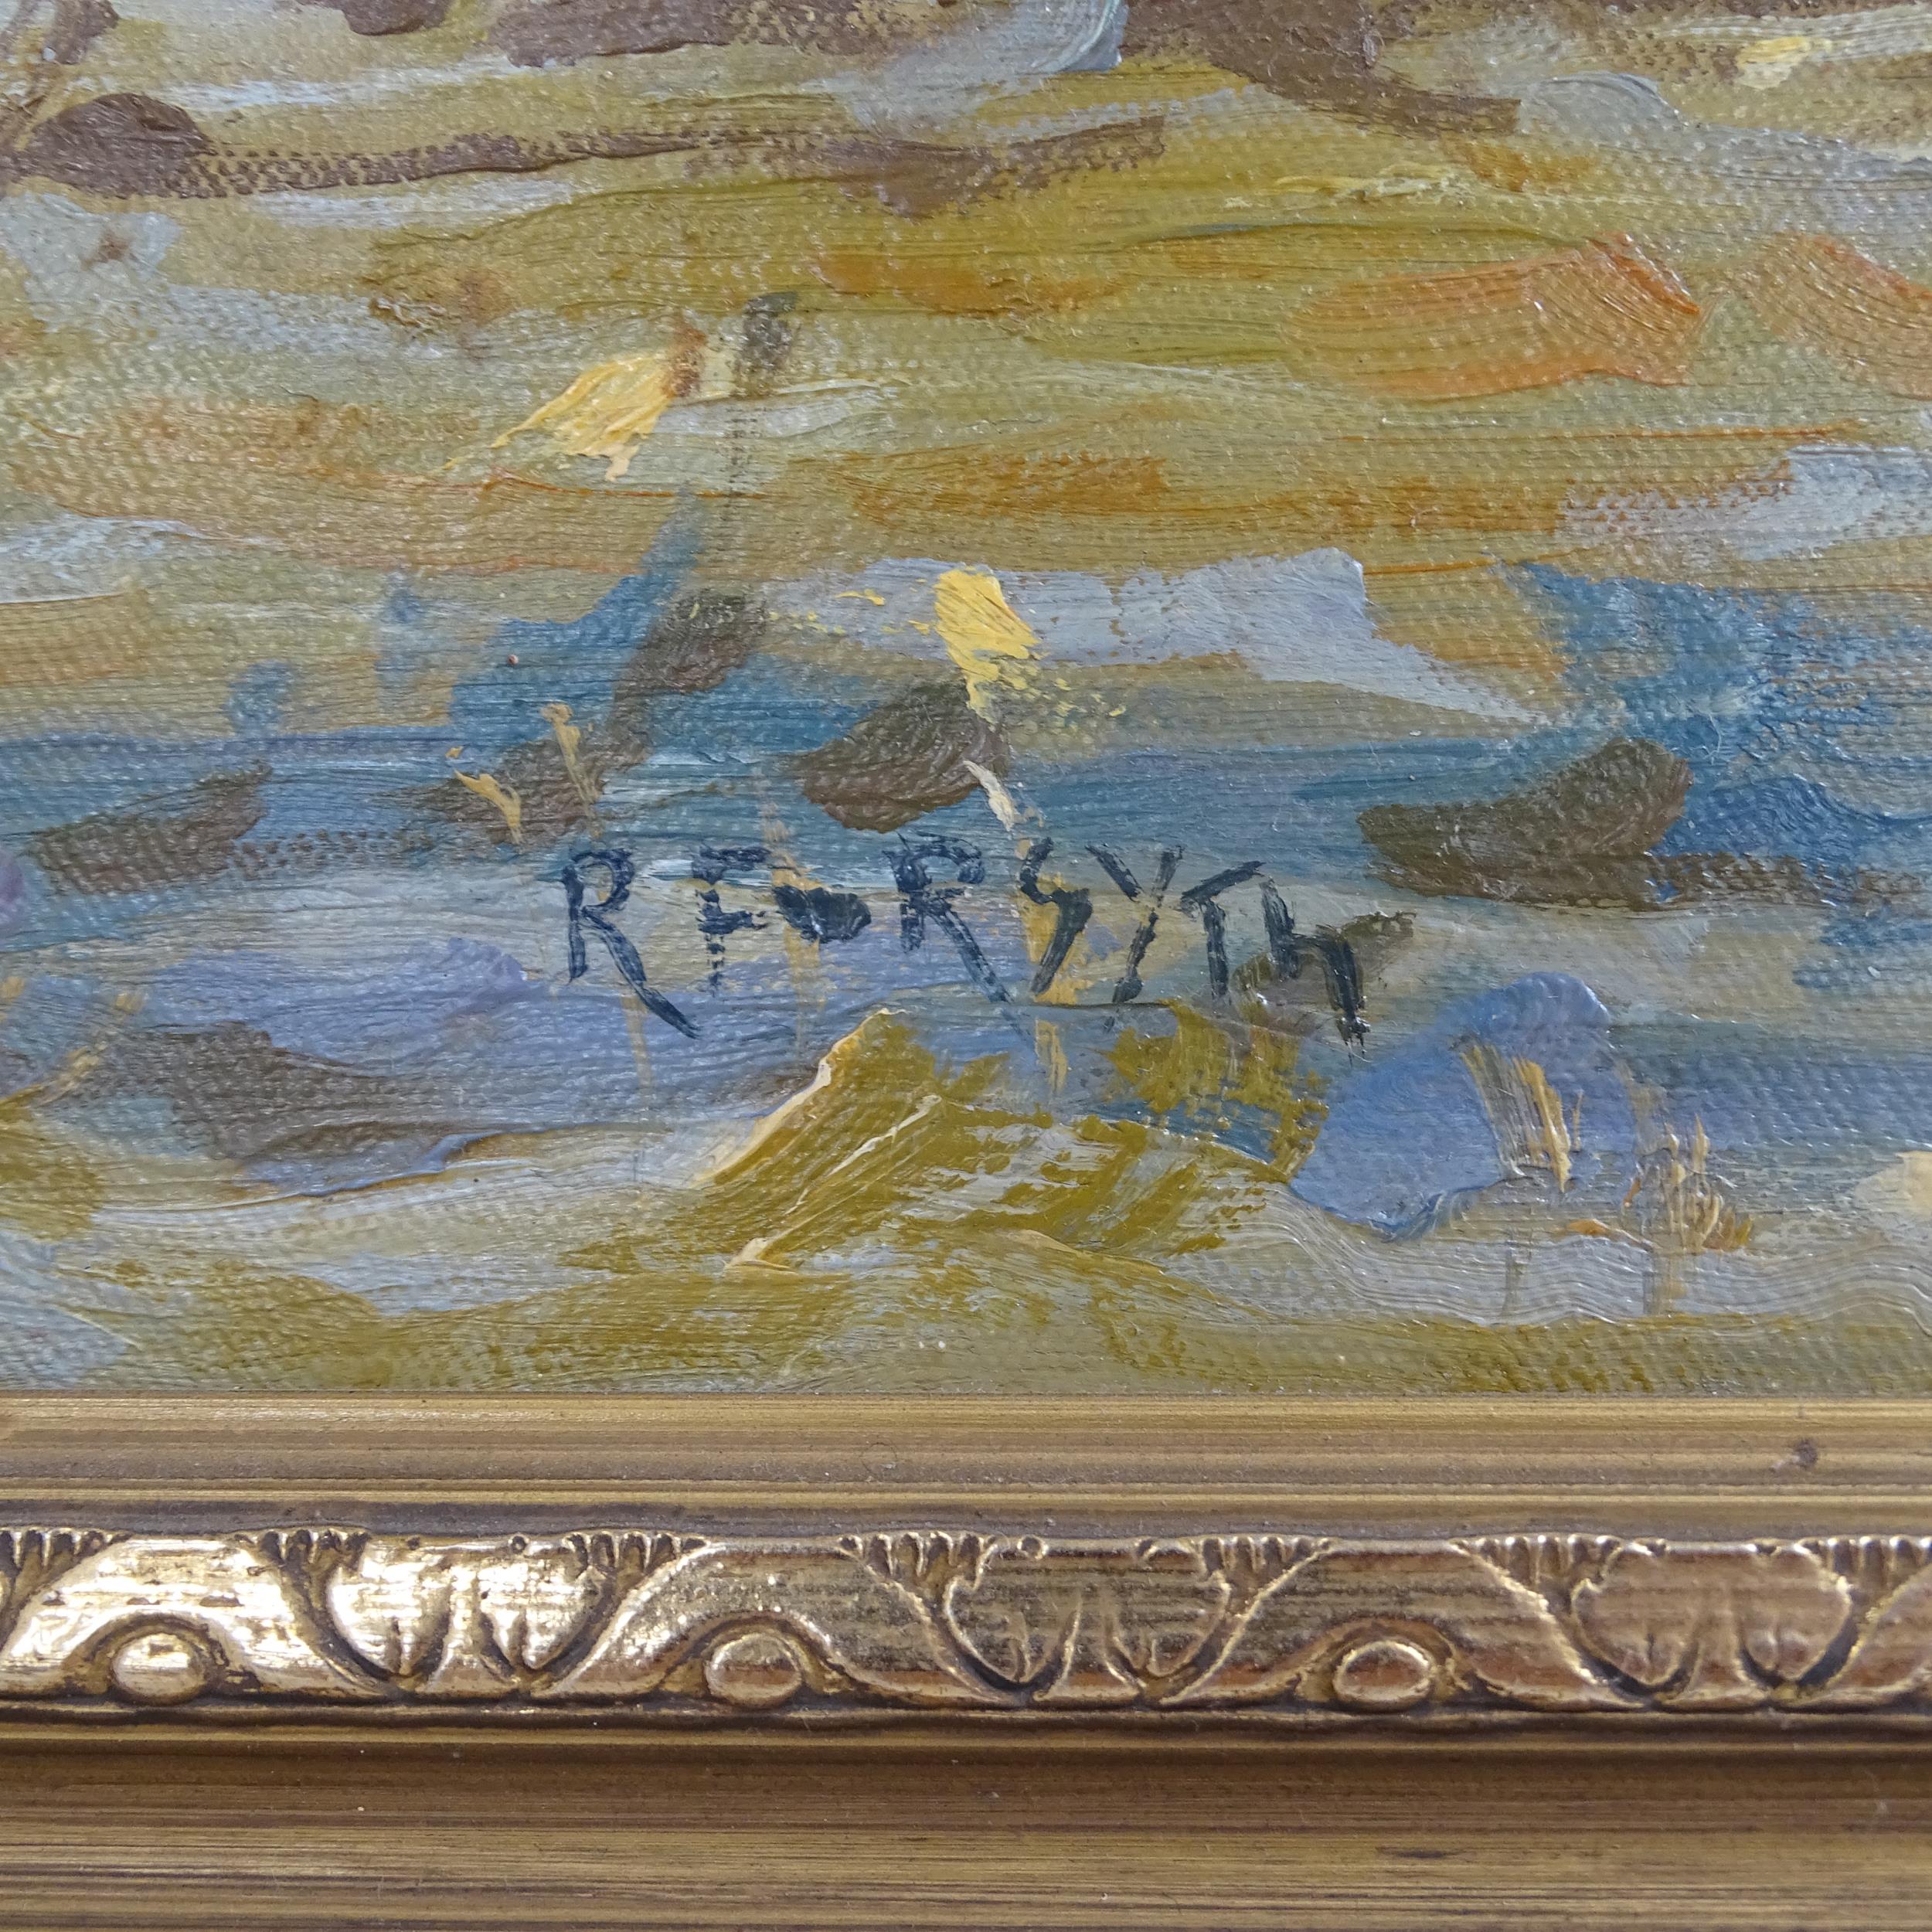 R Forsyth, oil on board, Ben Ledi near Callander, signed, 61cm x 91cm, framed - Image 2 of 2